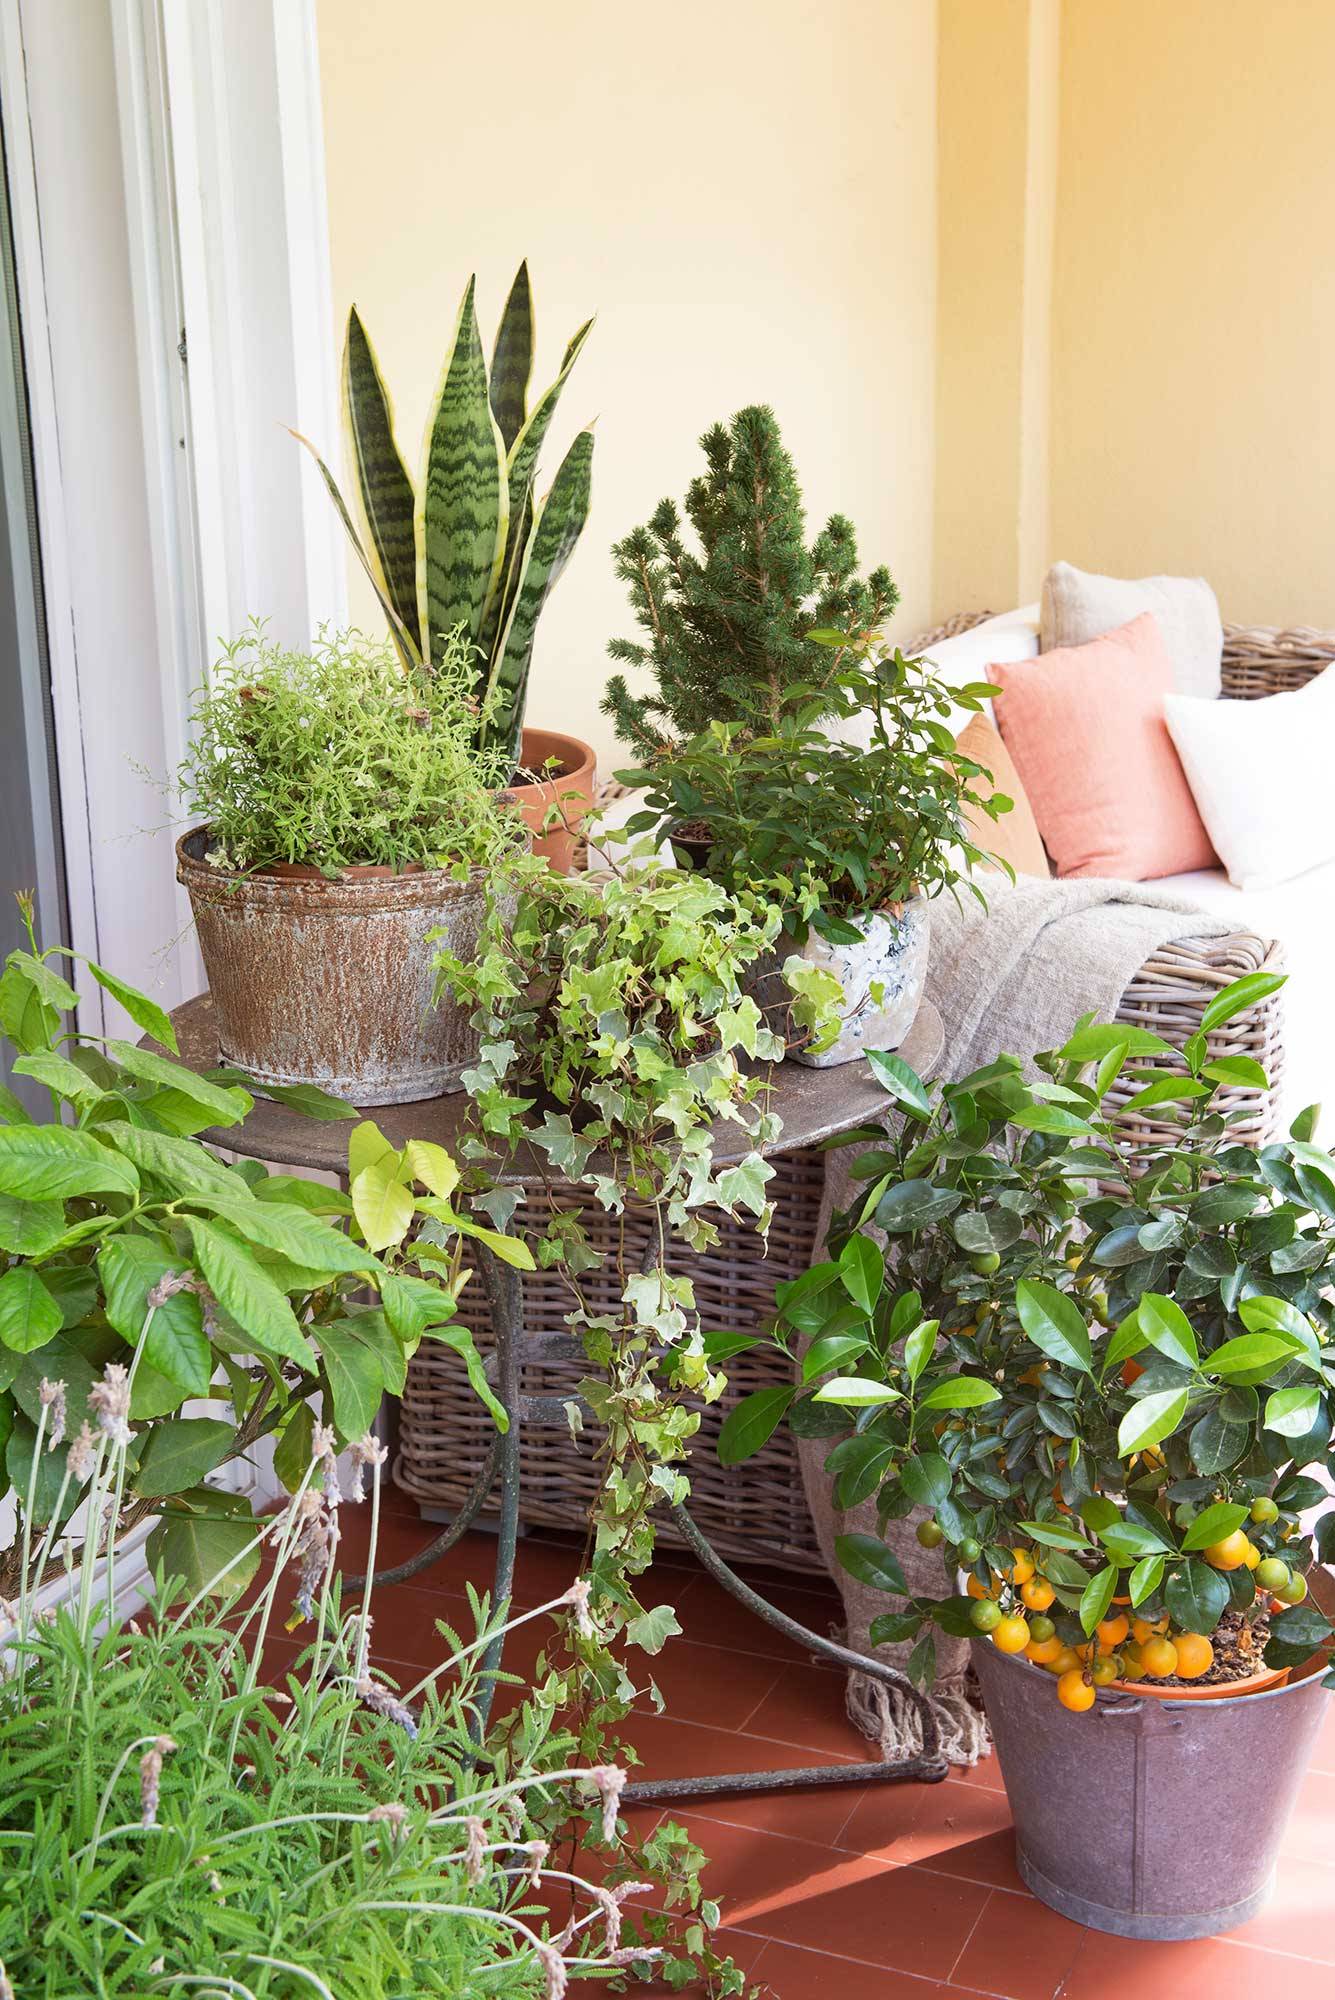 Un salón con terraza con plantas a tutilplén en el suelo o apoyadas en una pequeña mesa de hierro. 